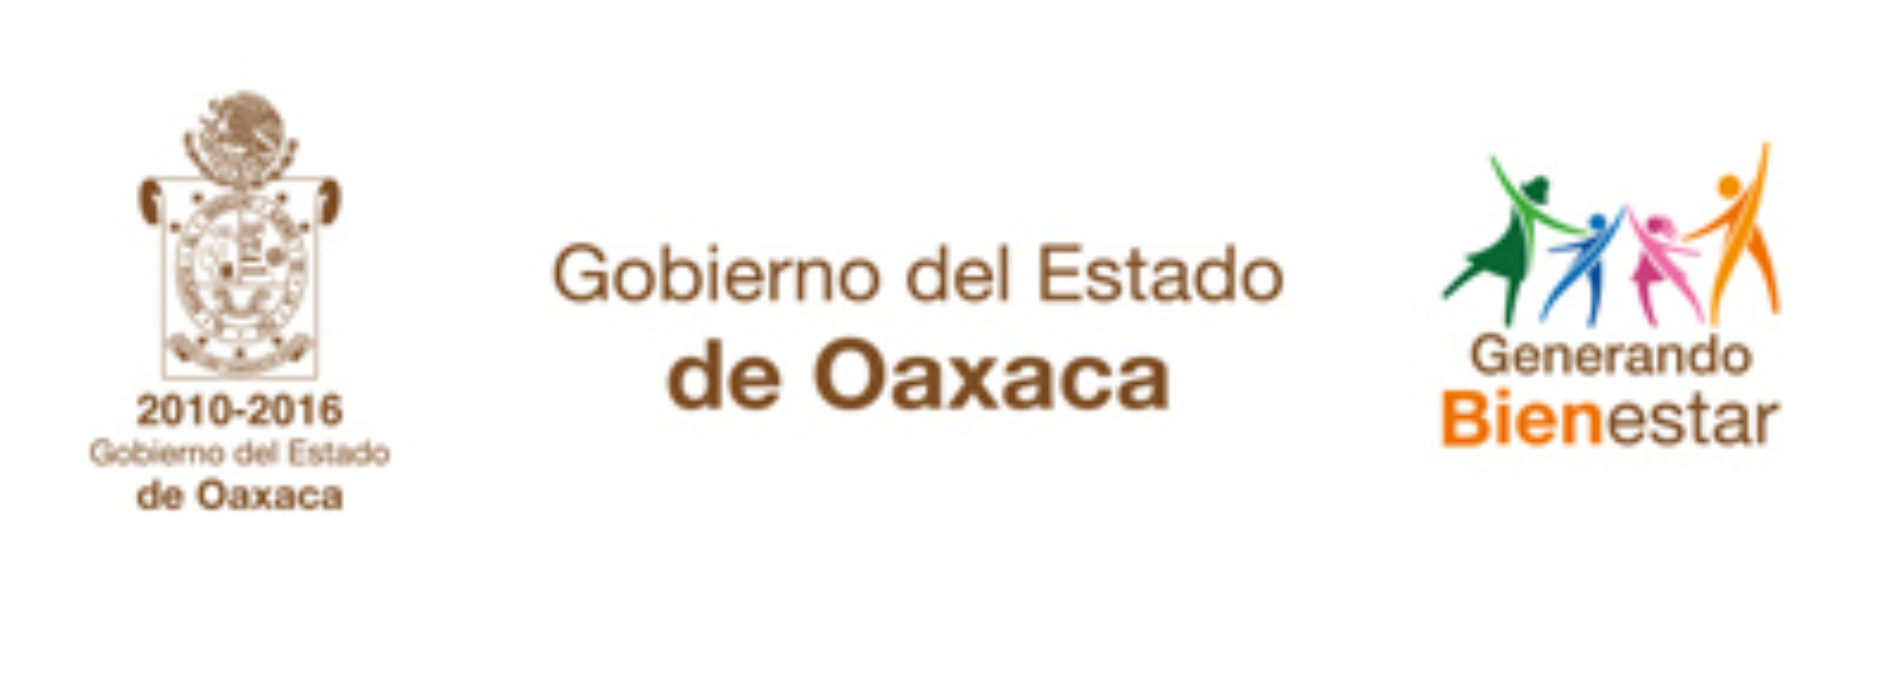 Fondo Oaxaca, referente financiero para otras entidades federativas: NAFIN